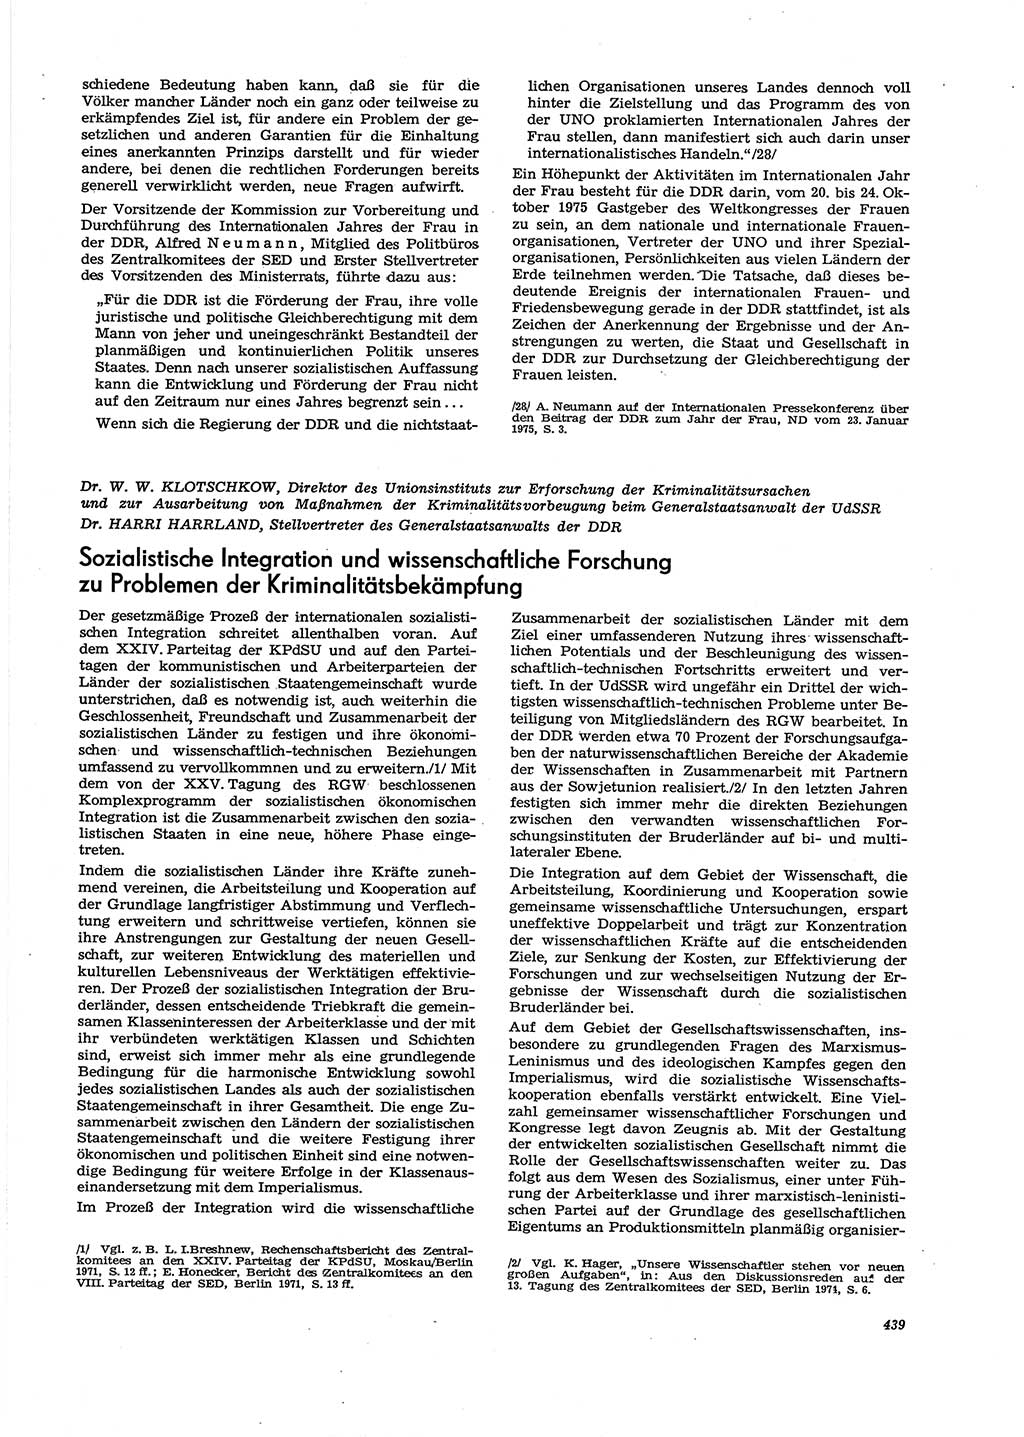 Neue Justiz (NJ), Zeitschrift für Recht und Rechtswissenschaft [Deutsche Demokratische Republik (DDR)], 29. Jahrgang 1975, Seite 439 (NJ DDR 1975, S. 439)